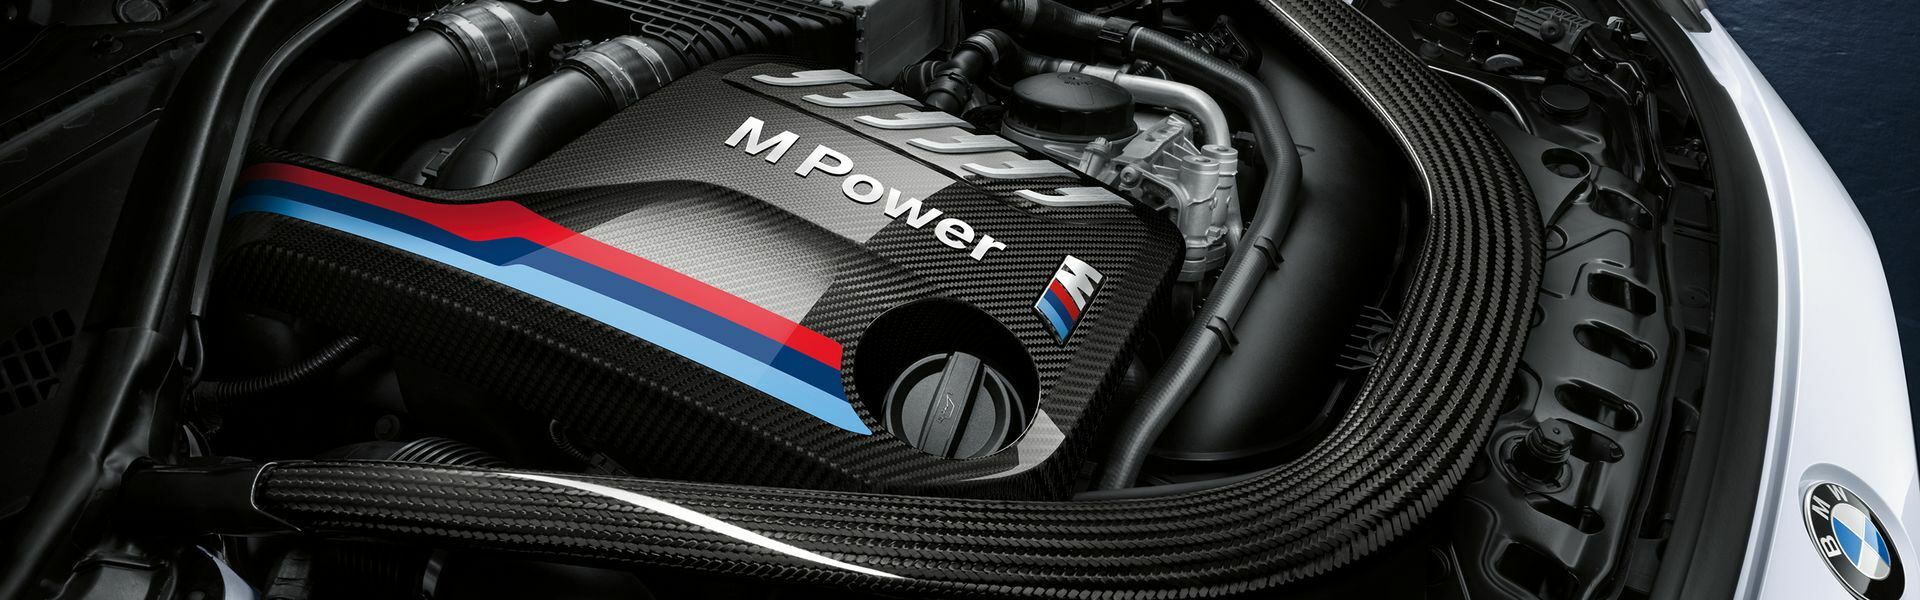 Zvýšení výkonu/ Softwarové úpravy/ Drobné performance díly pro automobil BMW X5M F85